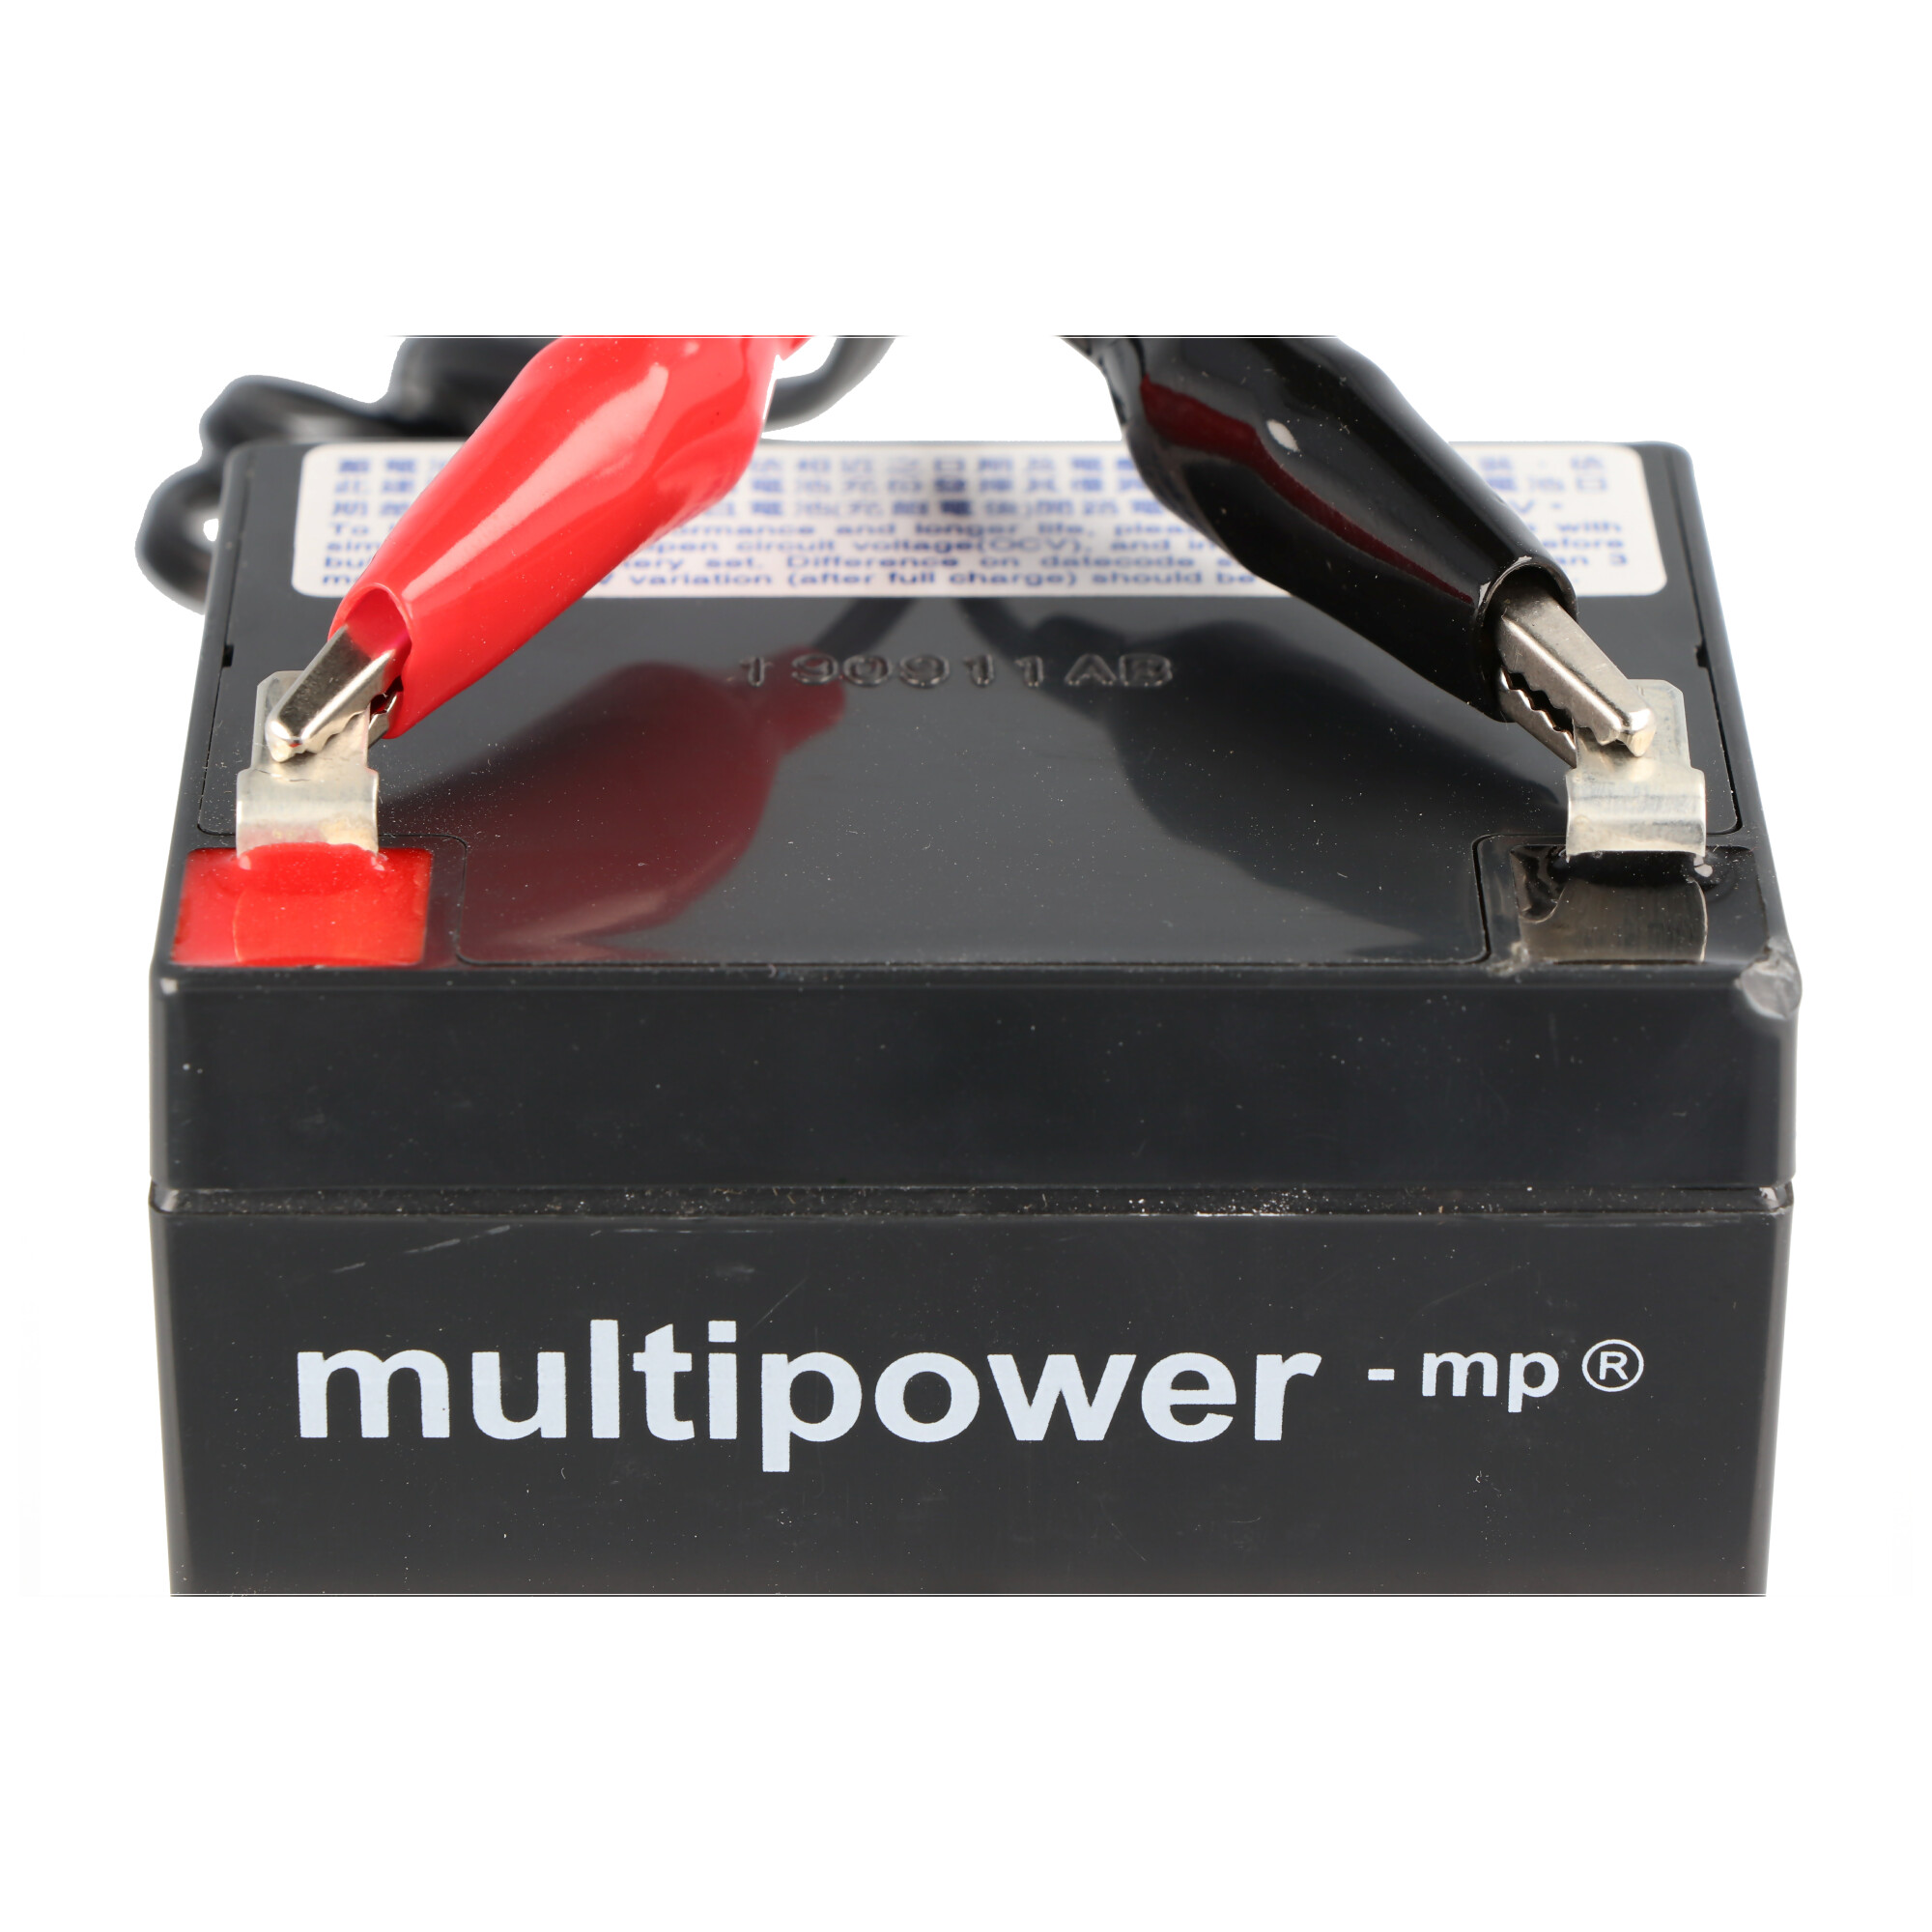 Multipower Ladegerät DL12-2 mit max. 2A Ladestrom, mit Kabel und Krokodil Klemmen